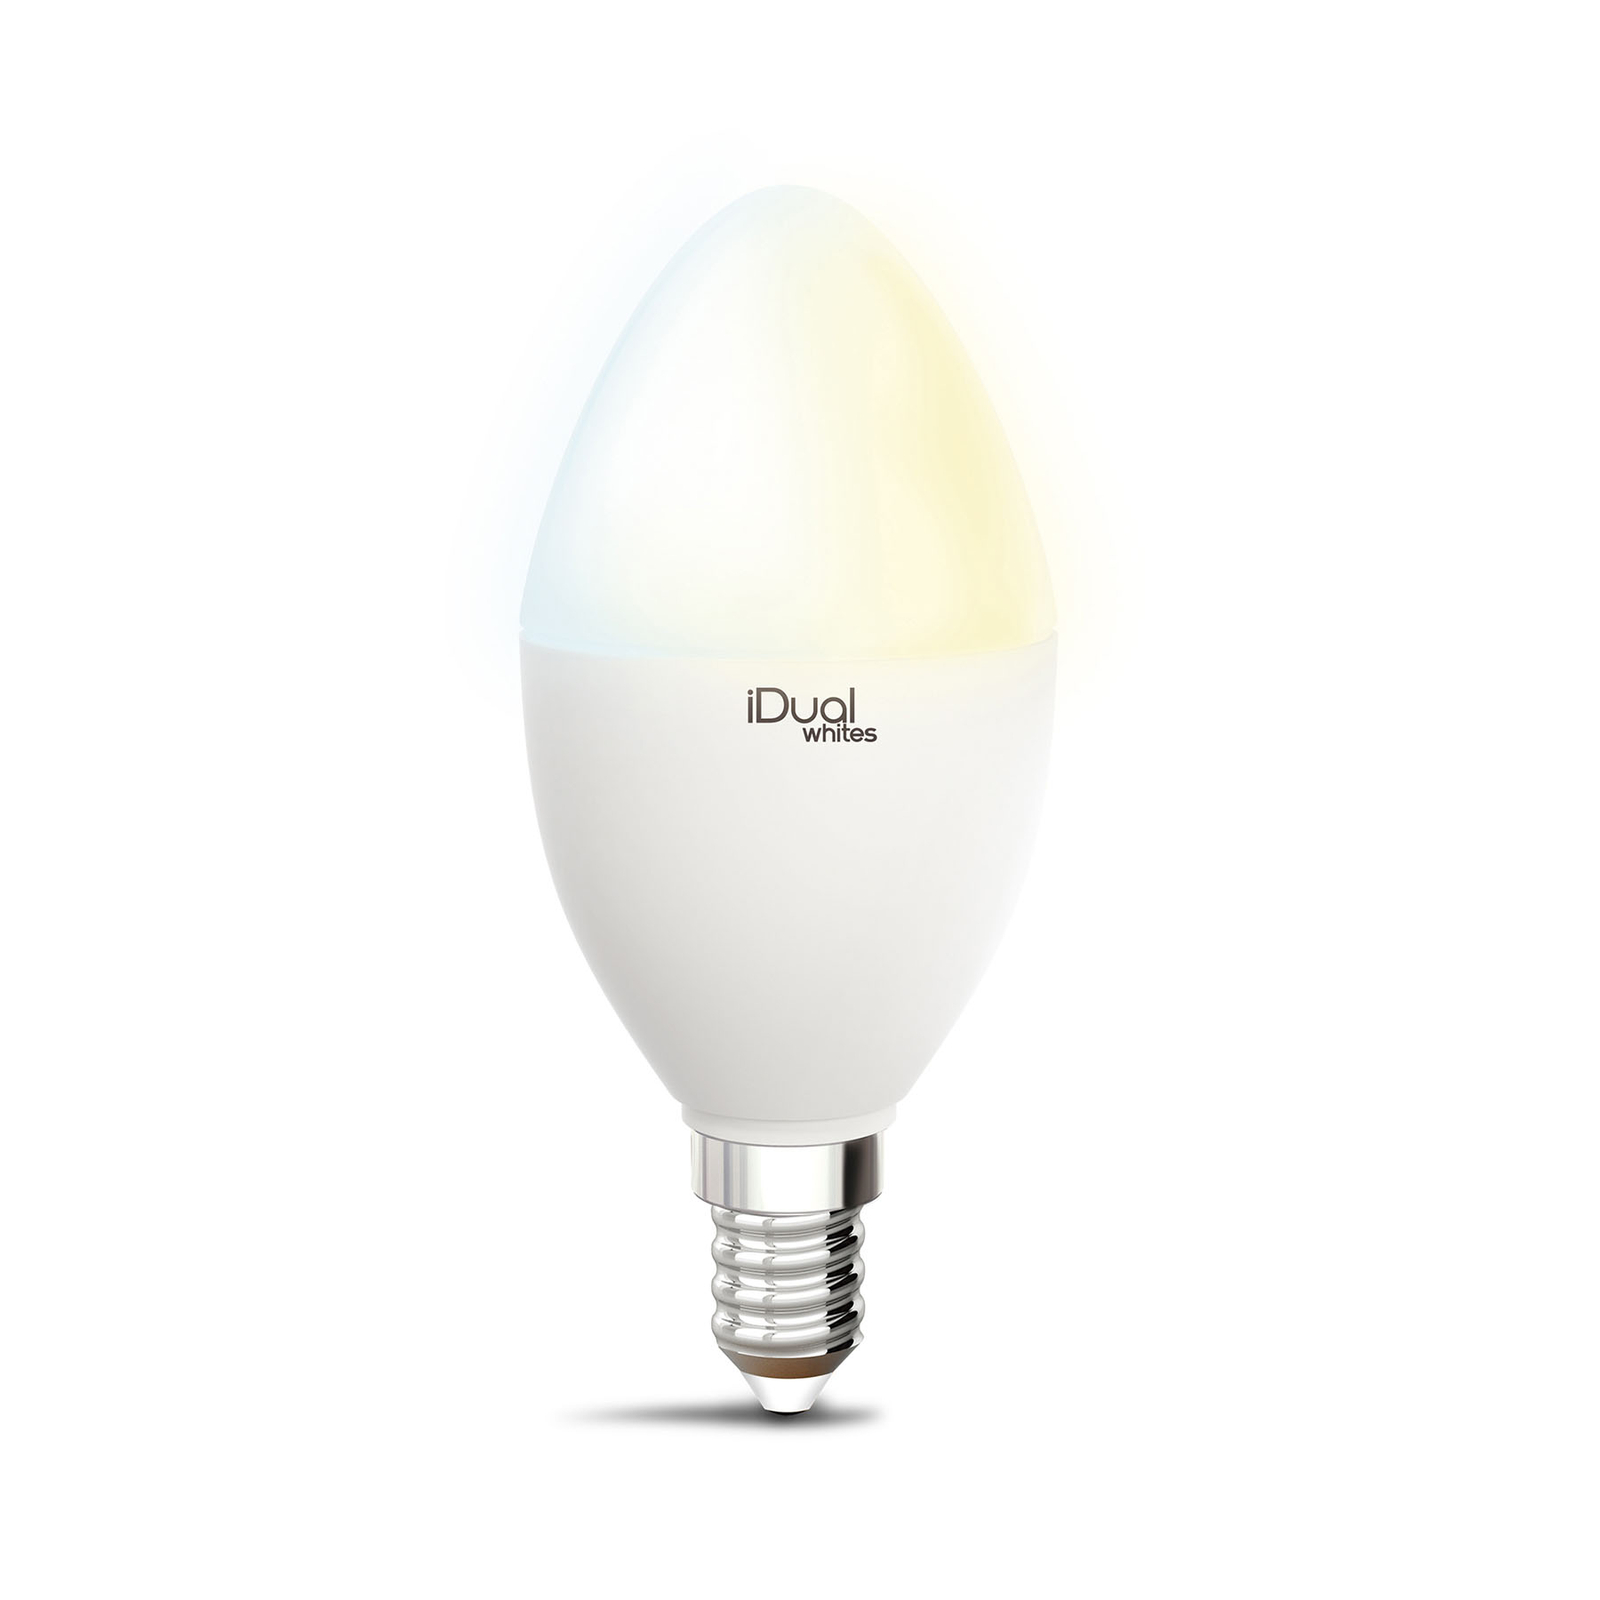 iDual Whites LED-pære, kerte P45 E14 5,5 W